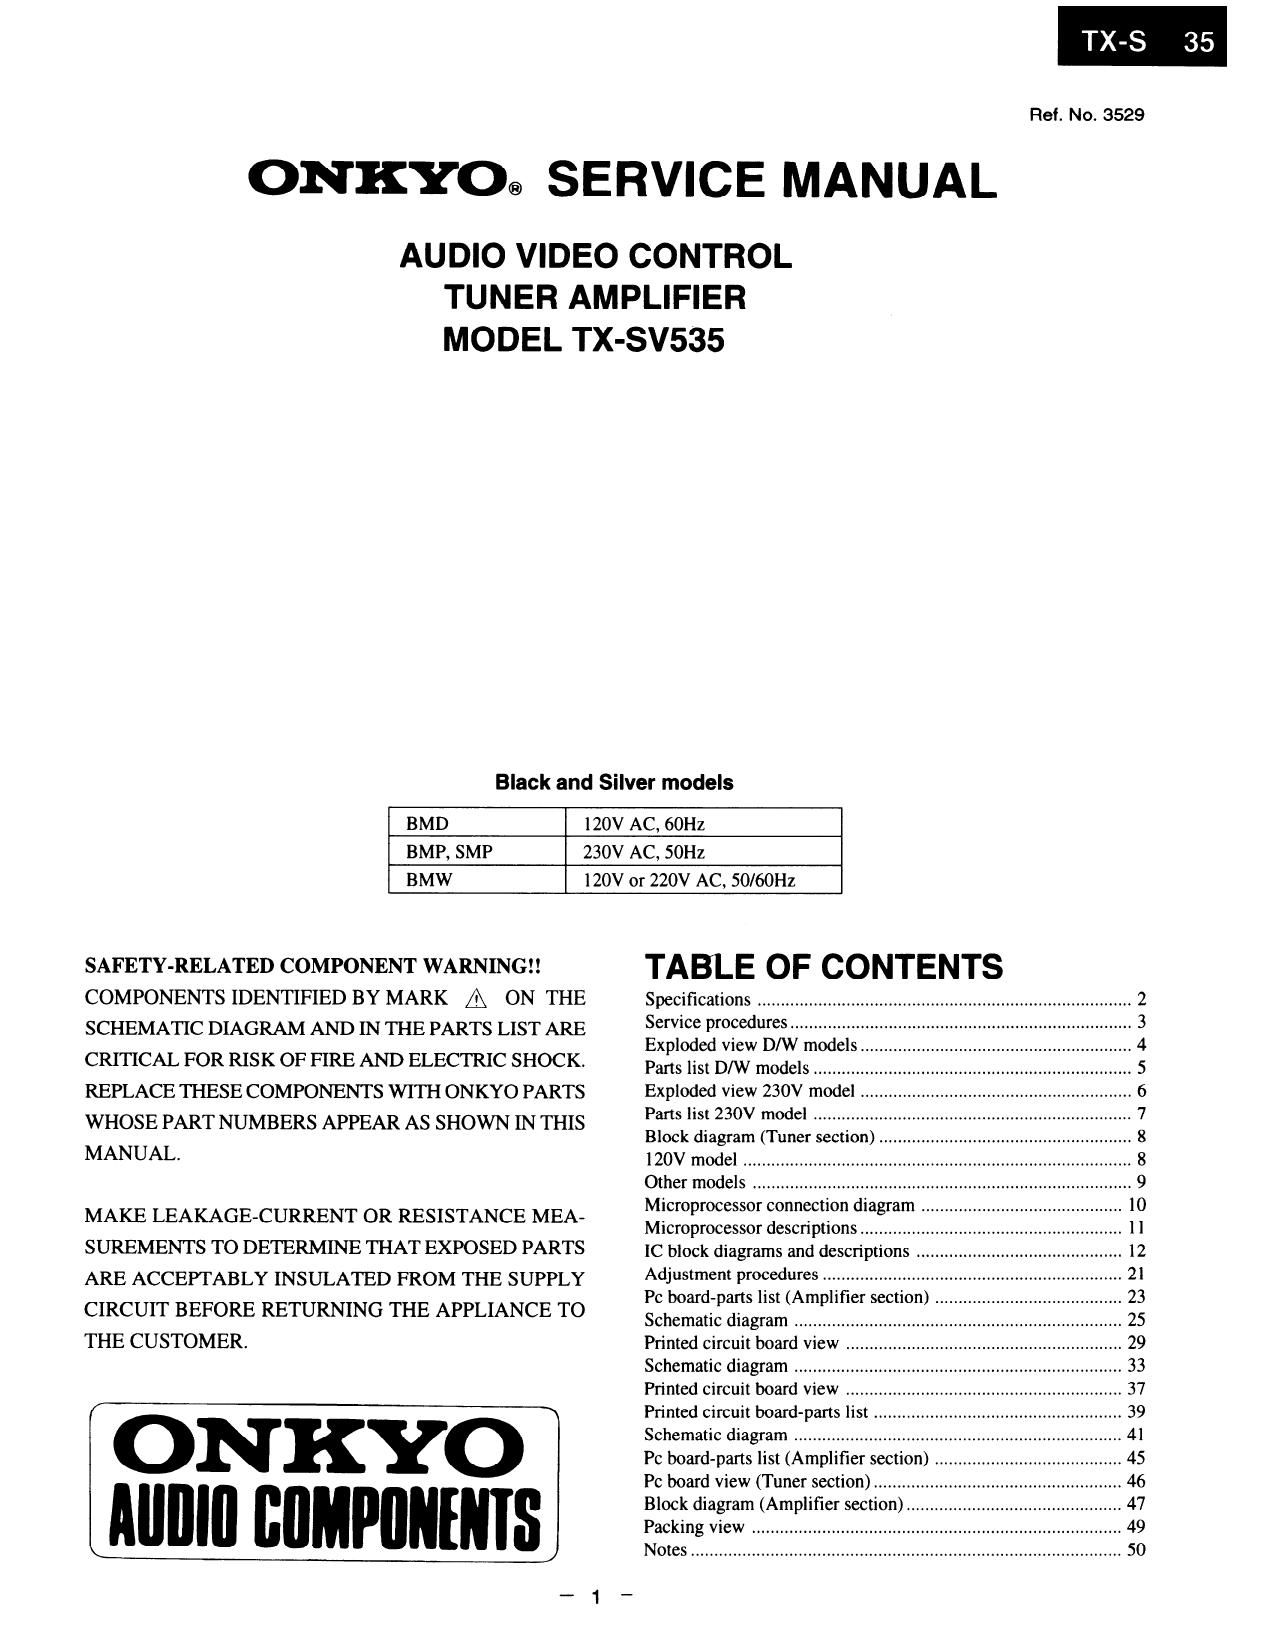 Onkyo TXSV 535 Service Manual